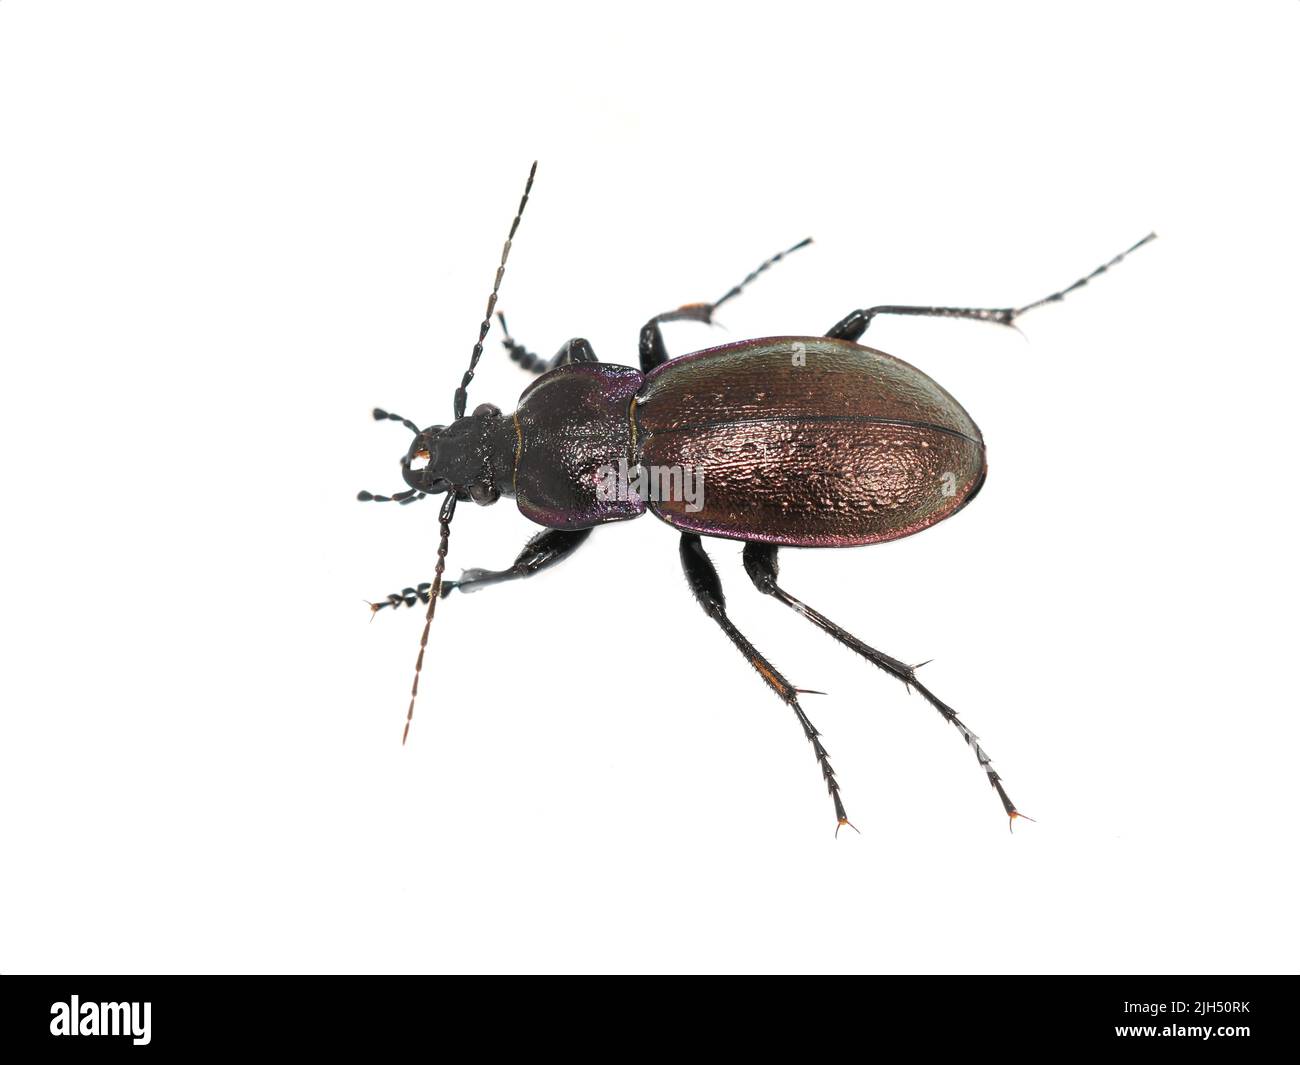 The big shiny ground beetle Carabus nemoralis on white background Stock Photo